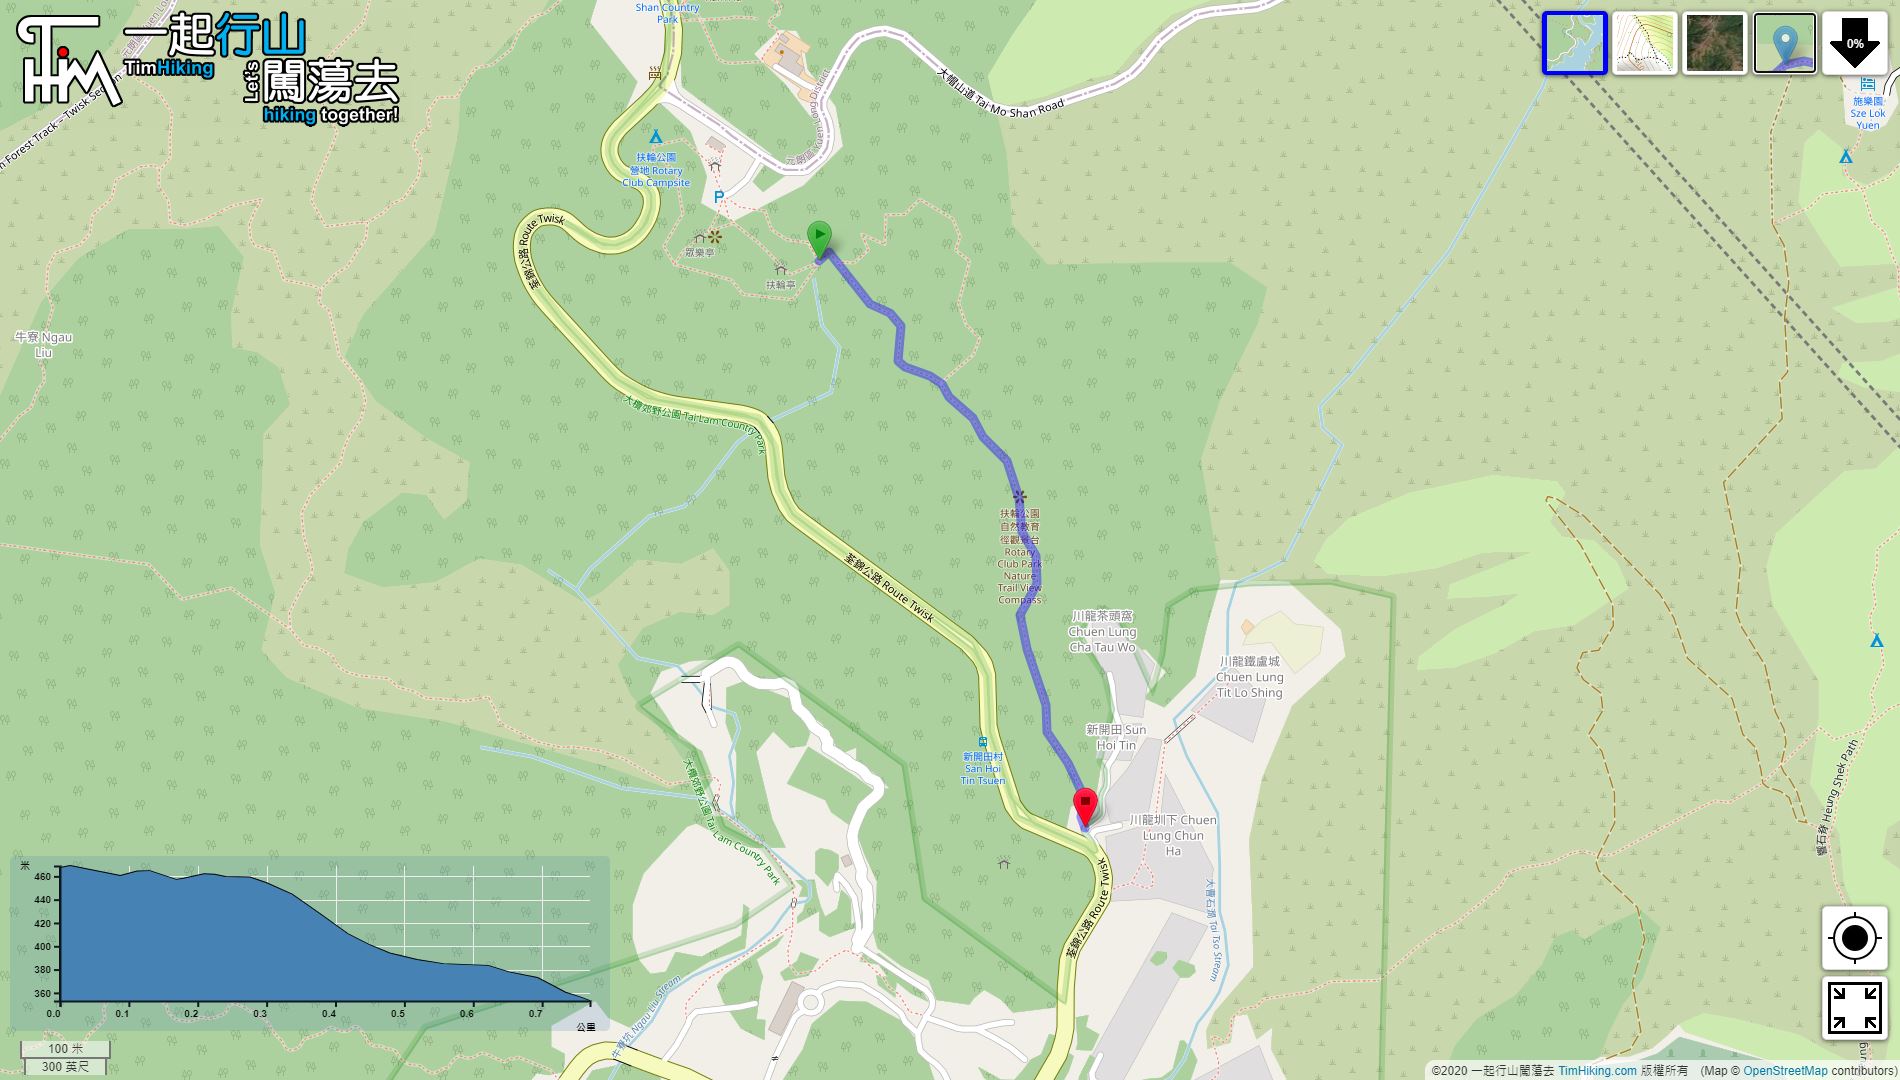 “扶轮公园自然教育径”路线地图